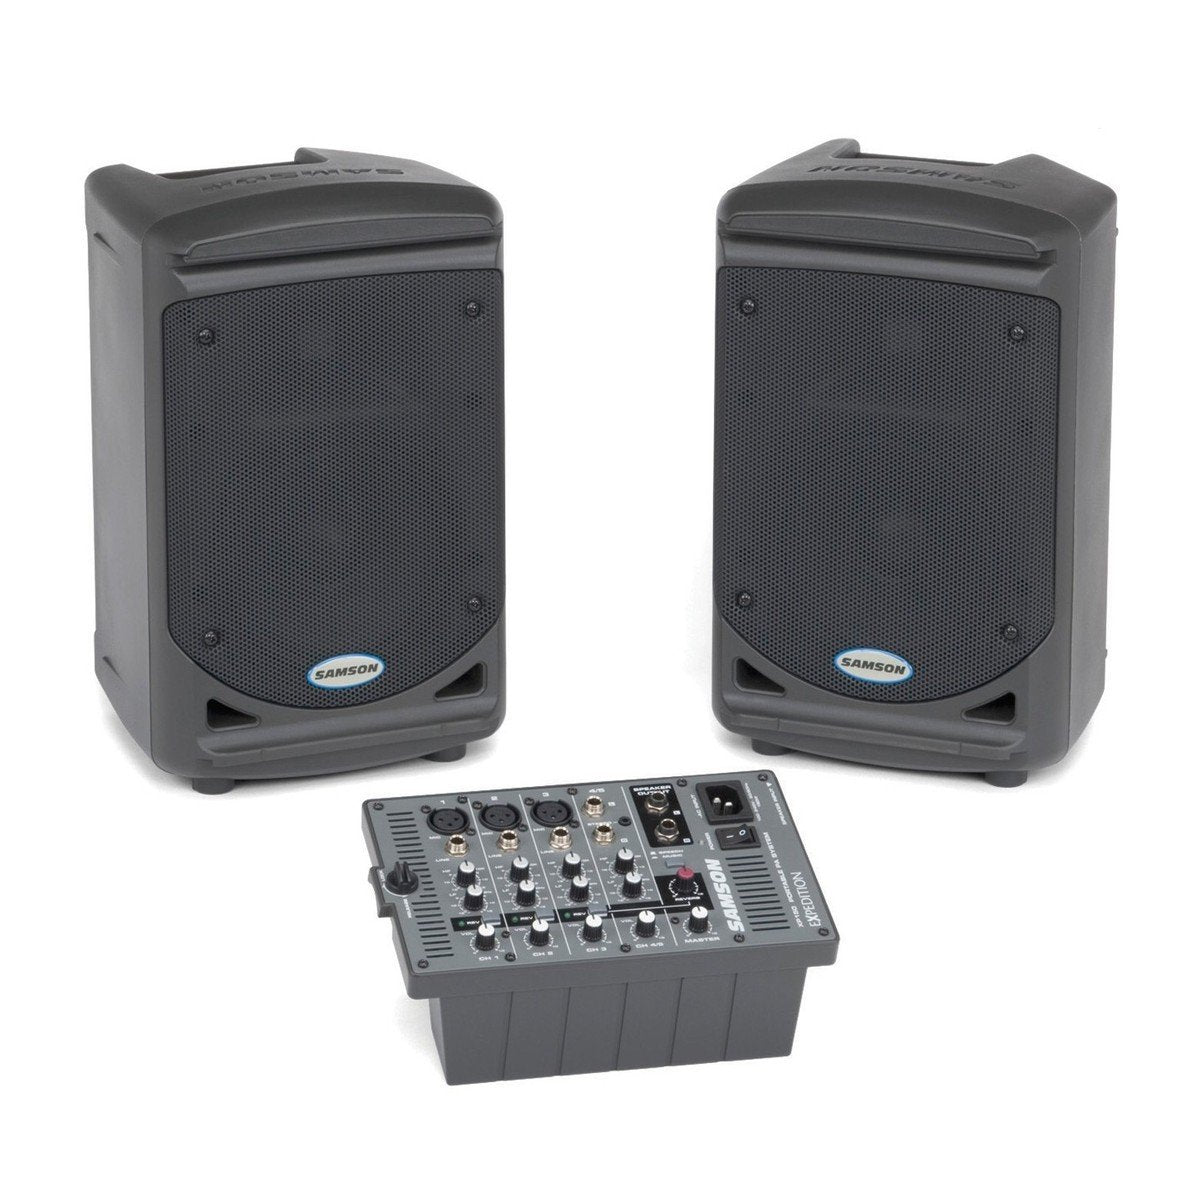 SAMSON XP 150 150W RMS (2x75W) Portable p.a. systems - DY Pro Audio